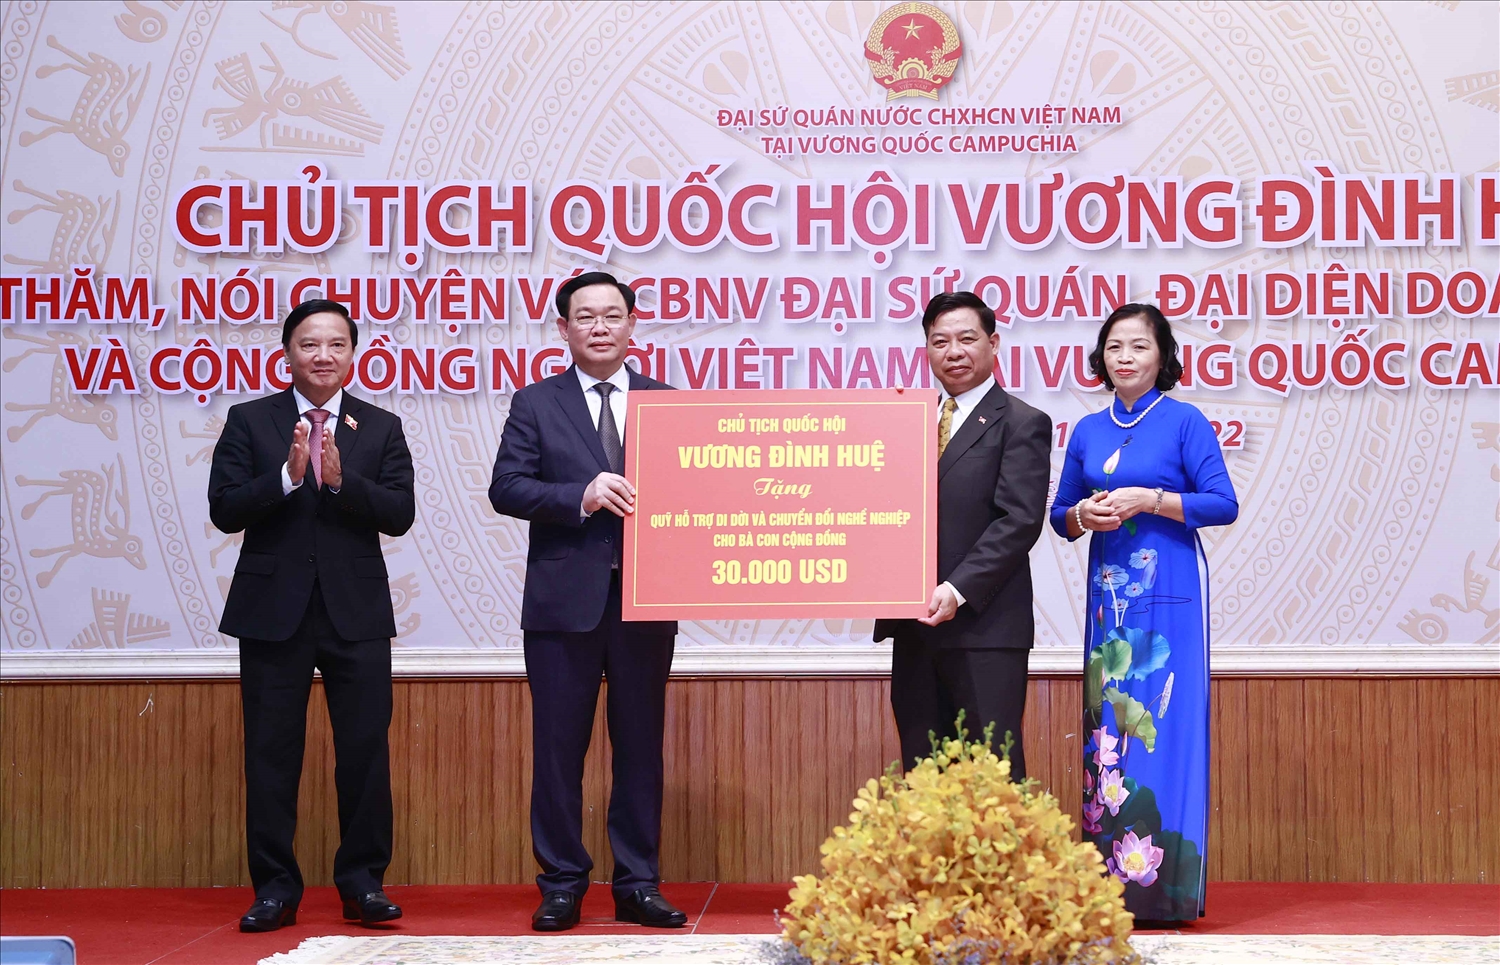 Chủ tịch Quốc hội Vương Đình Huệ tặng quỹ hỗ trợ di dời và chuyển đổi nghề nghiệp cho bà con cộng đồng.